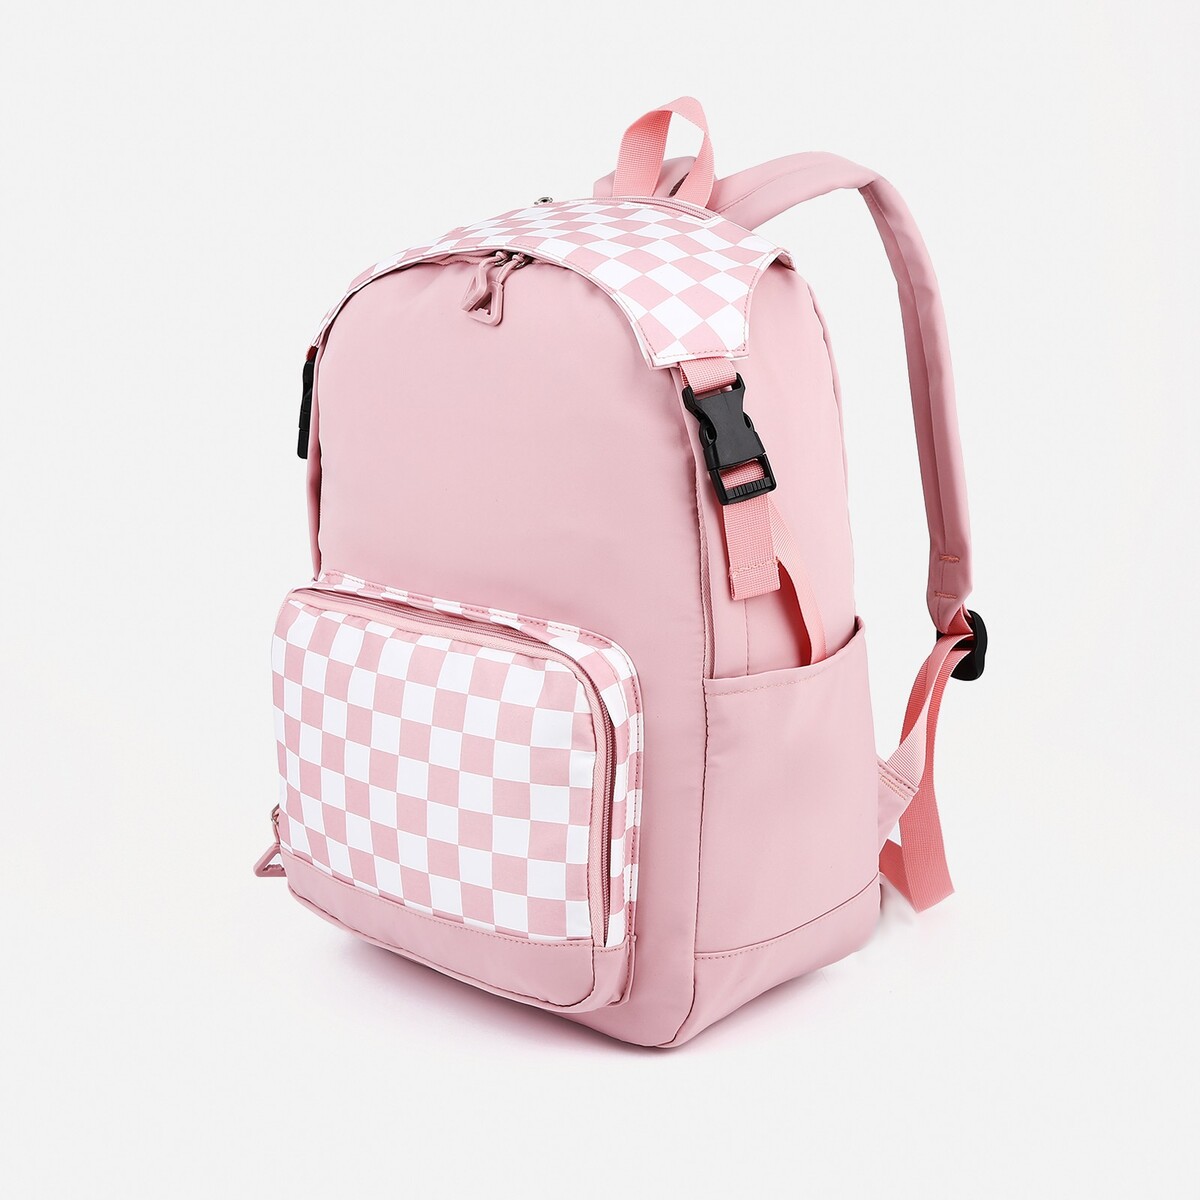 Рюкзак школьный из текстиля, 5 карманов, цвет розовый рюкзак школьный из текстиля на молнии 6 карманов